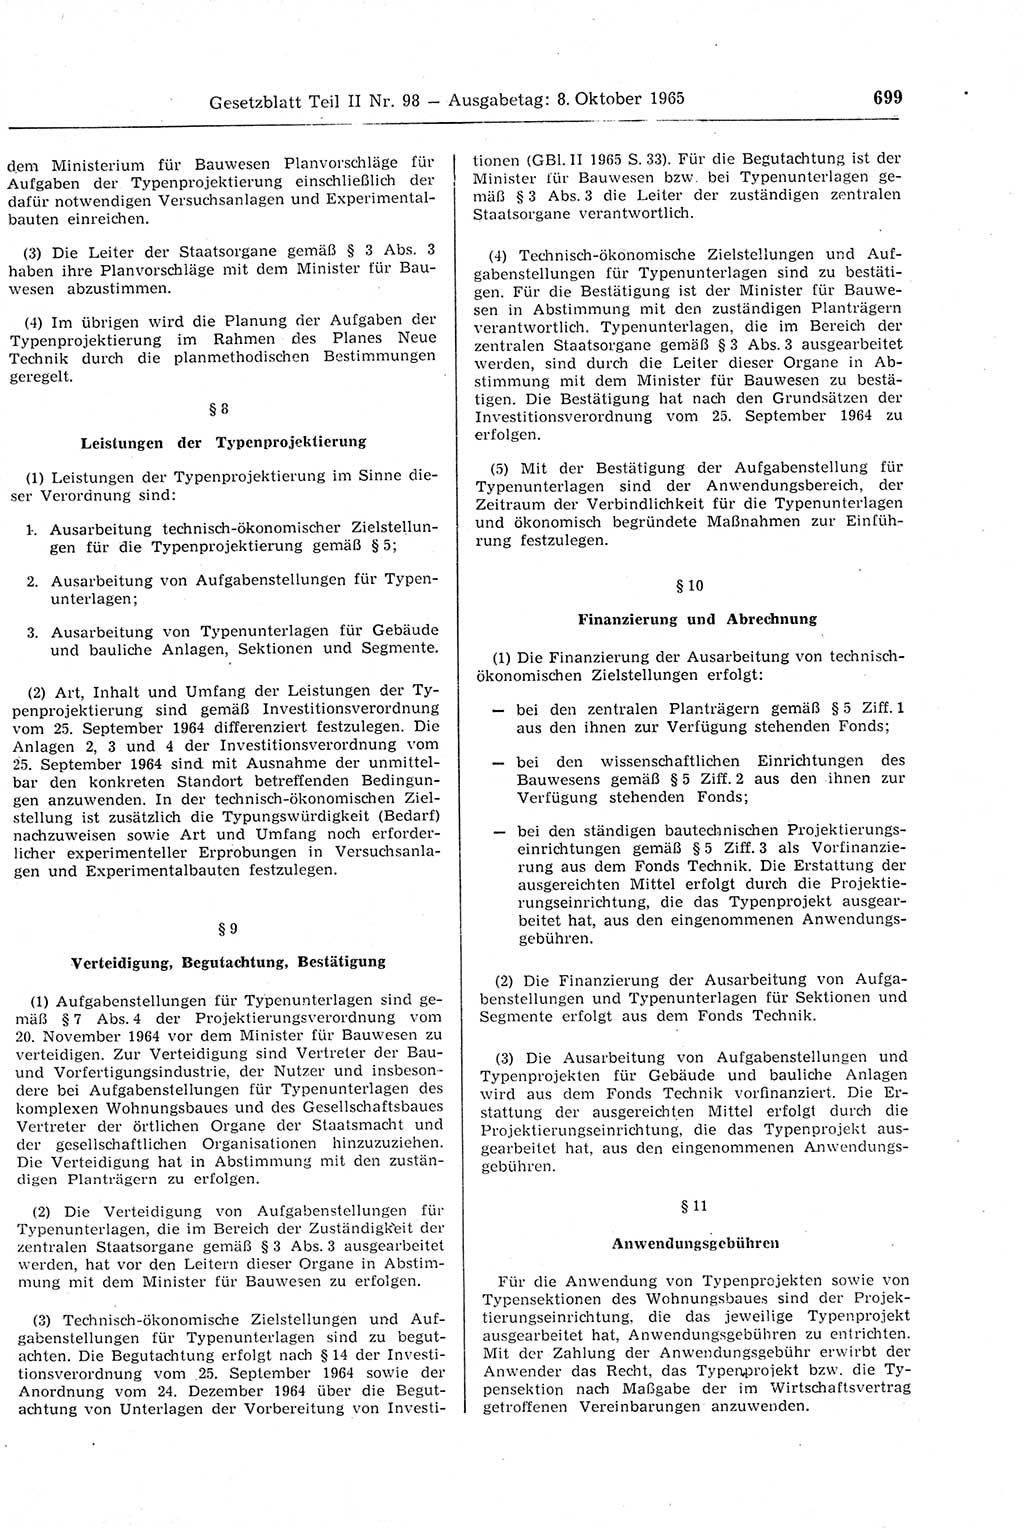 Gesetzblatt (GBl.) der Deutschen Demokratischen Republik (DDR) Teil ⅠⅠ 1965, Seite 699 (GBl. DDR ⅠⅠ 1965, S. 699)